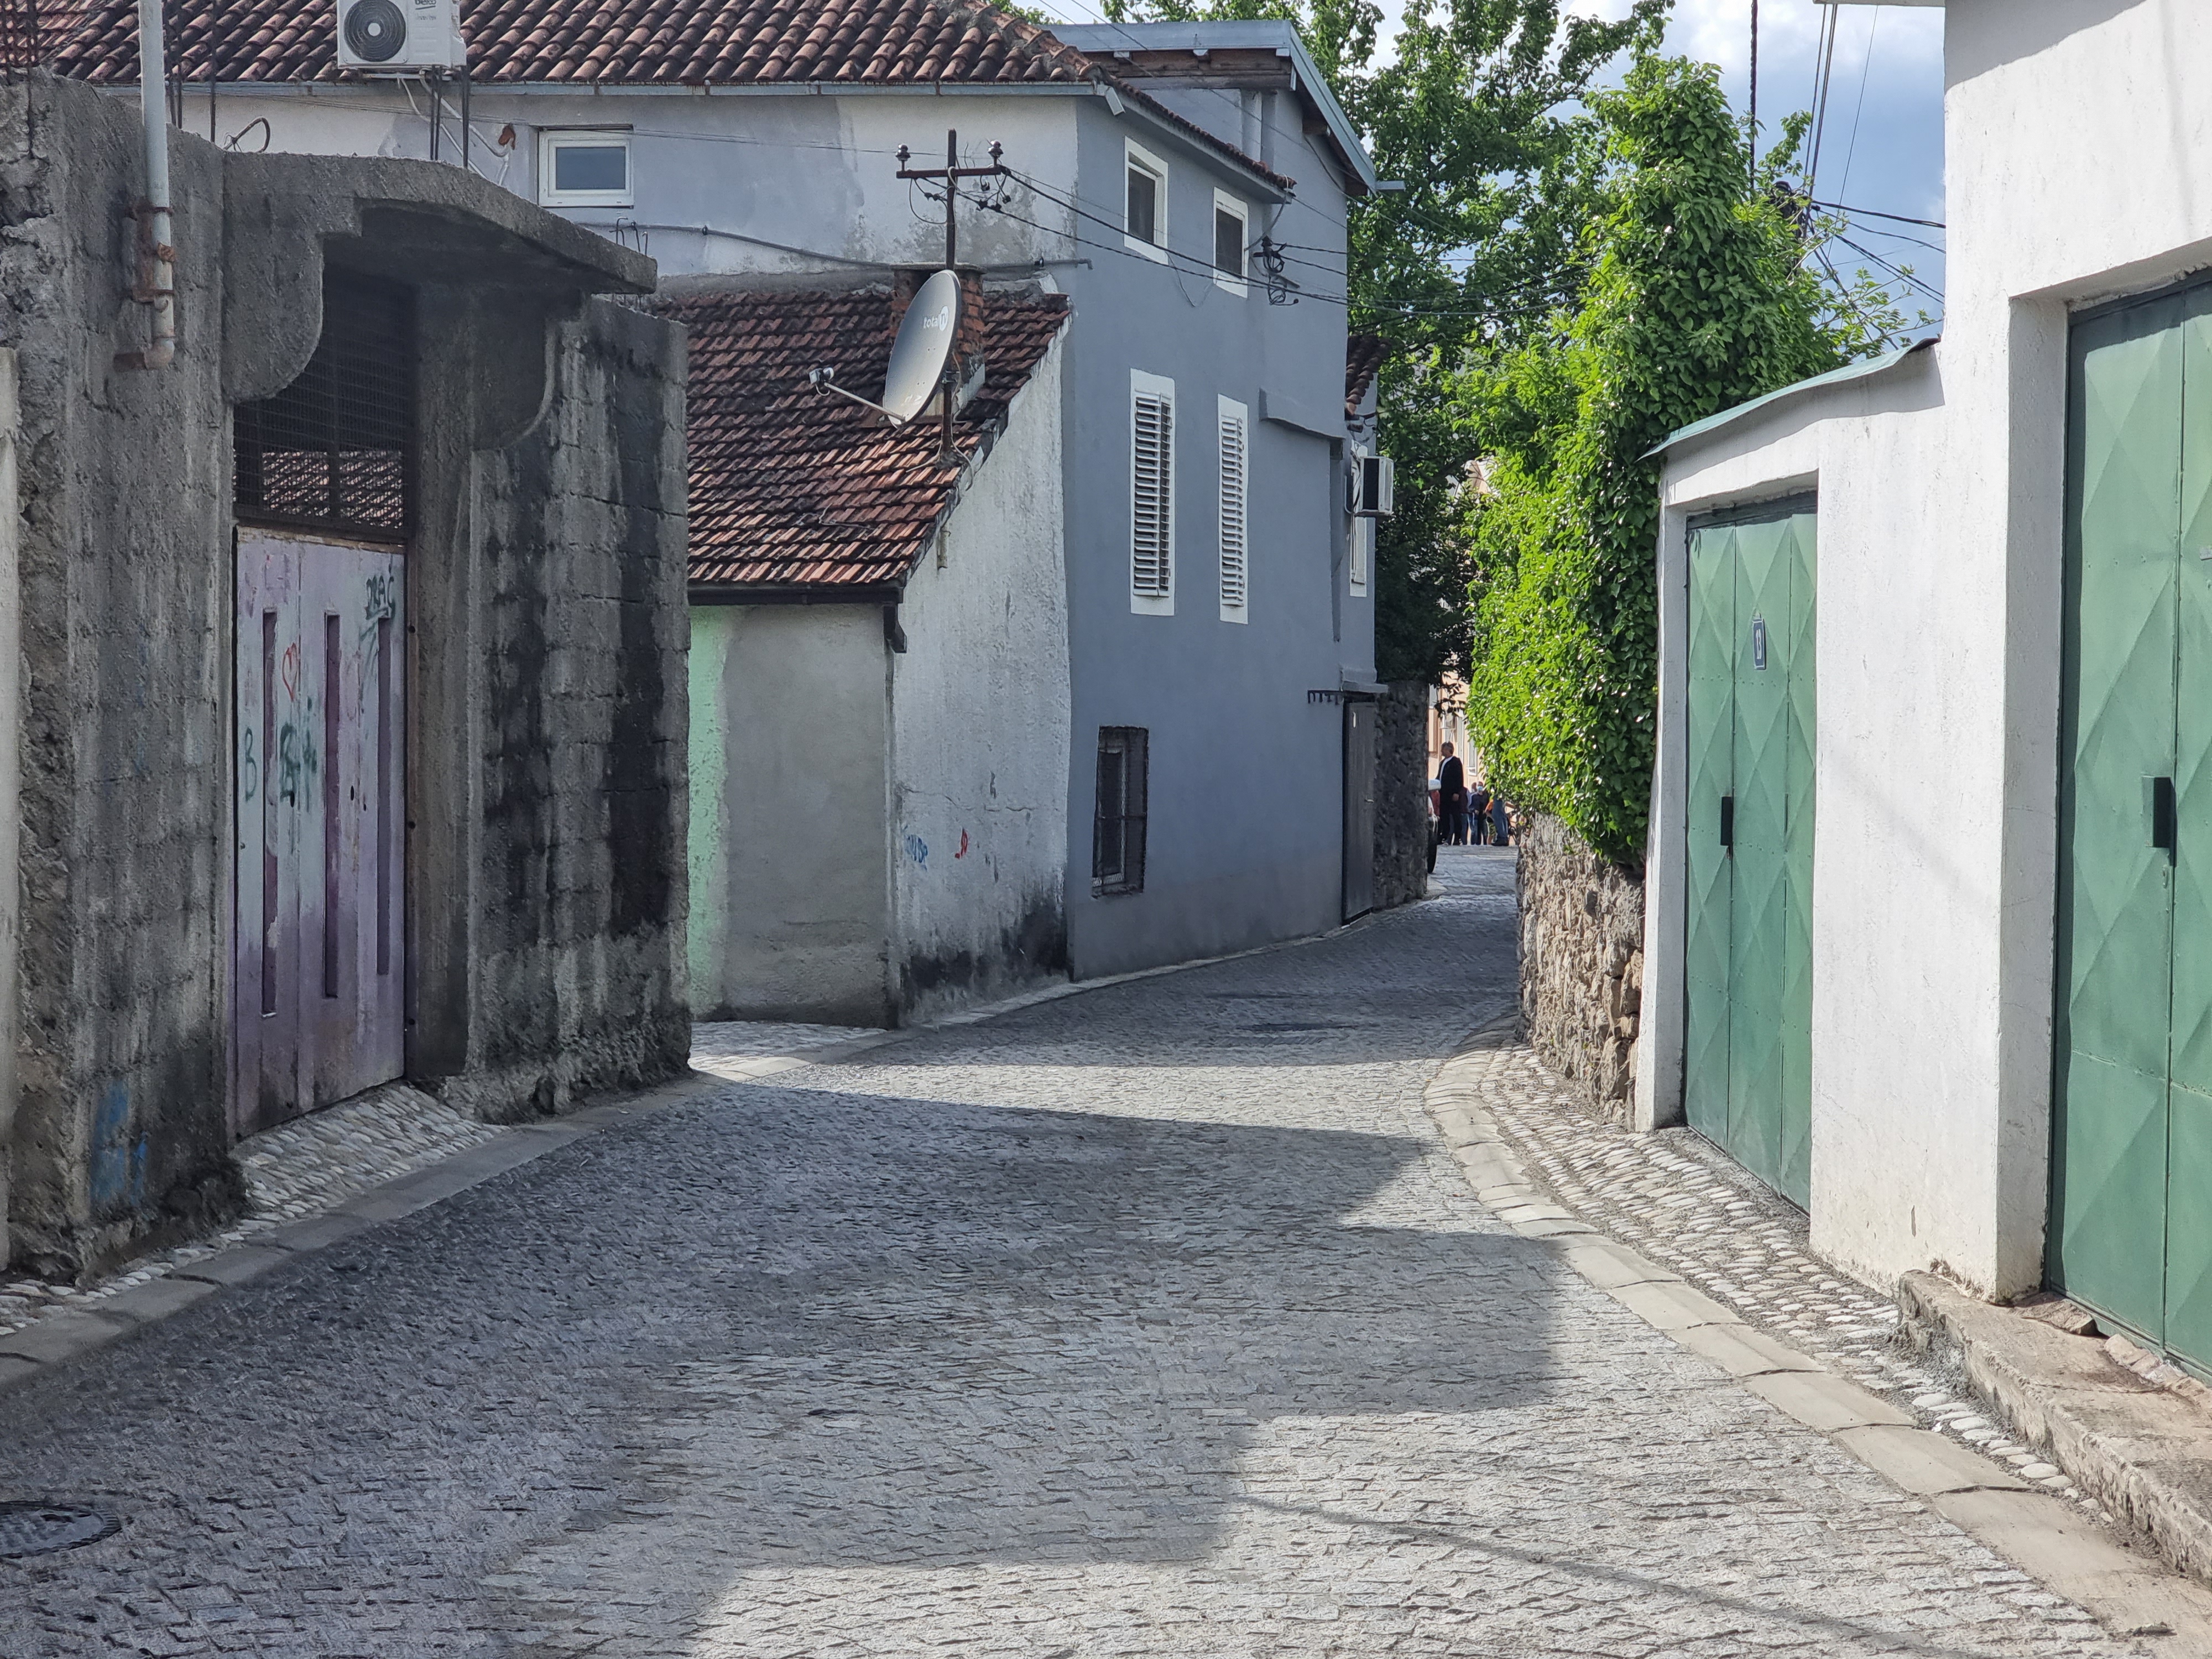 Završena rekonstrukcija Ulice Slobodana Škerovića na Draču; Još jedna ulica u srcu stare Podgorice dobila novi izgled u autentičnom duhu